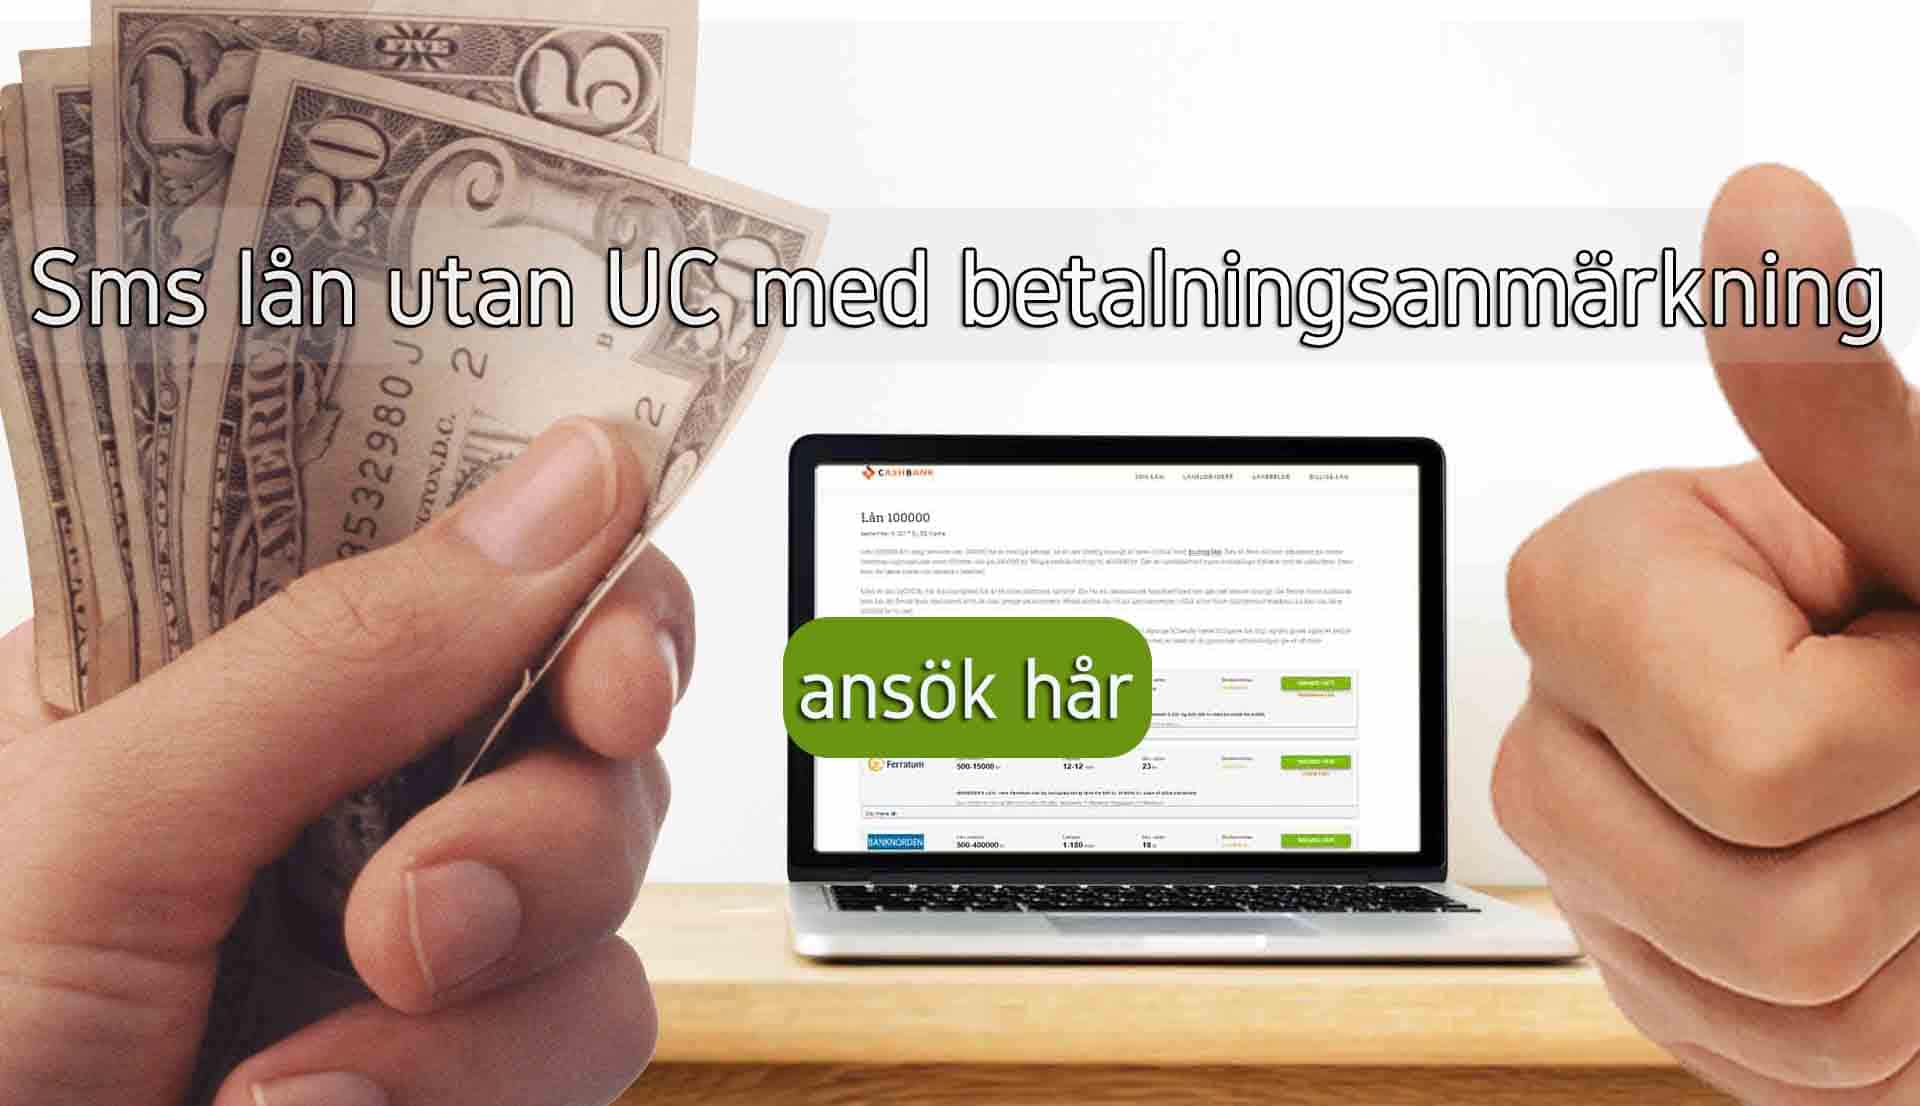 Sms lån utan UC med betalningsanmärkning